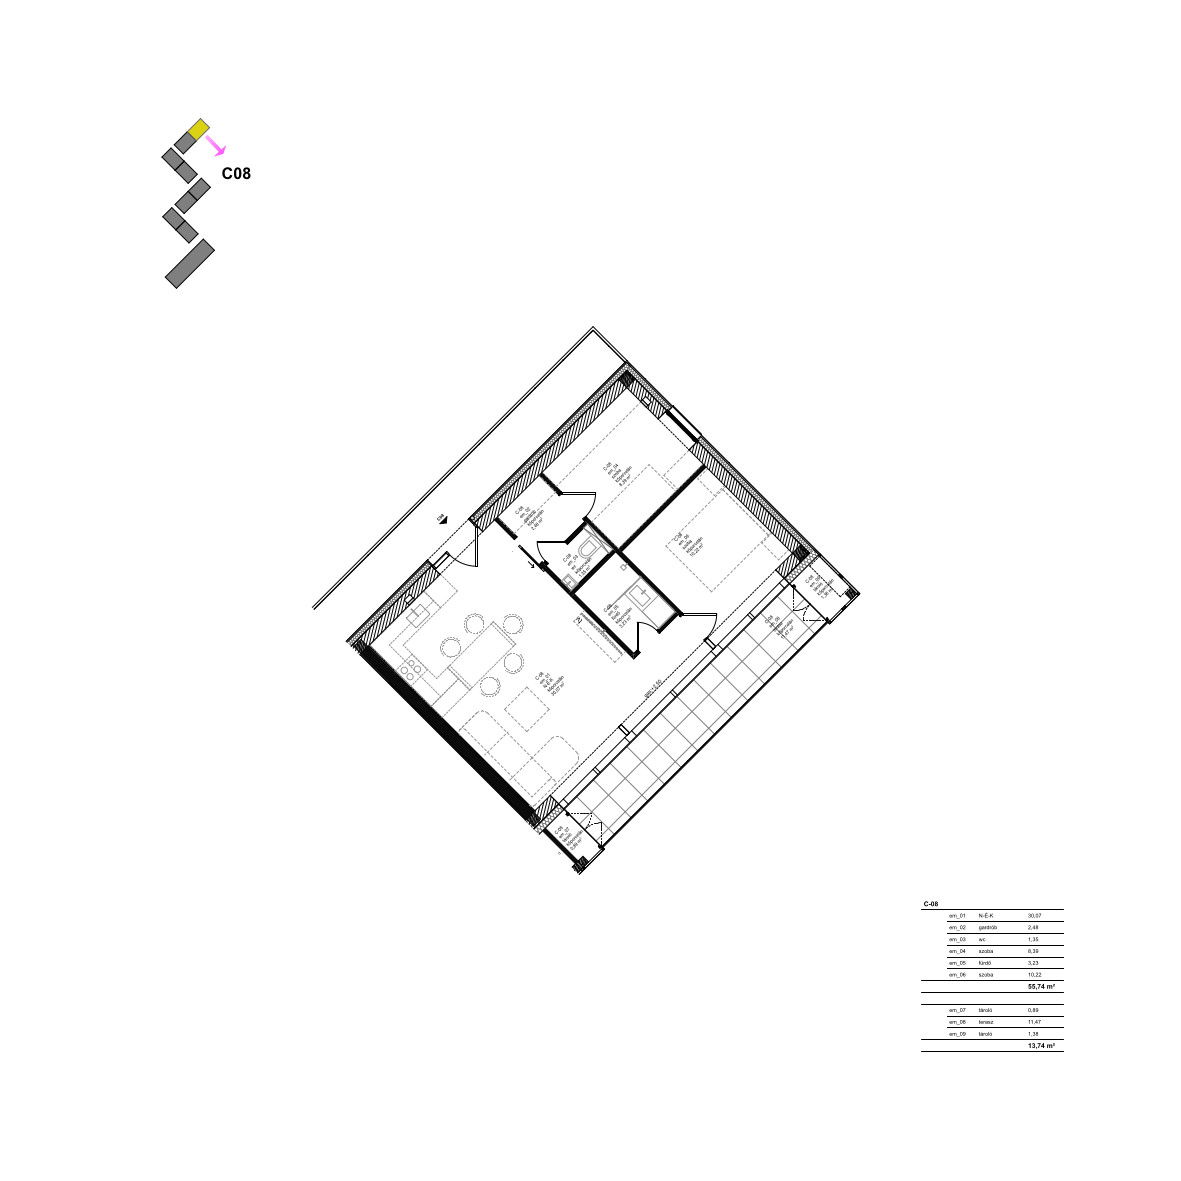 C08 Apartment floor plan